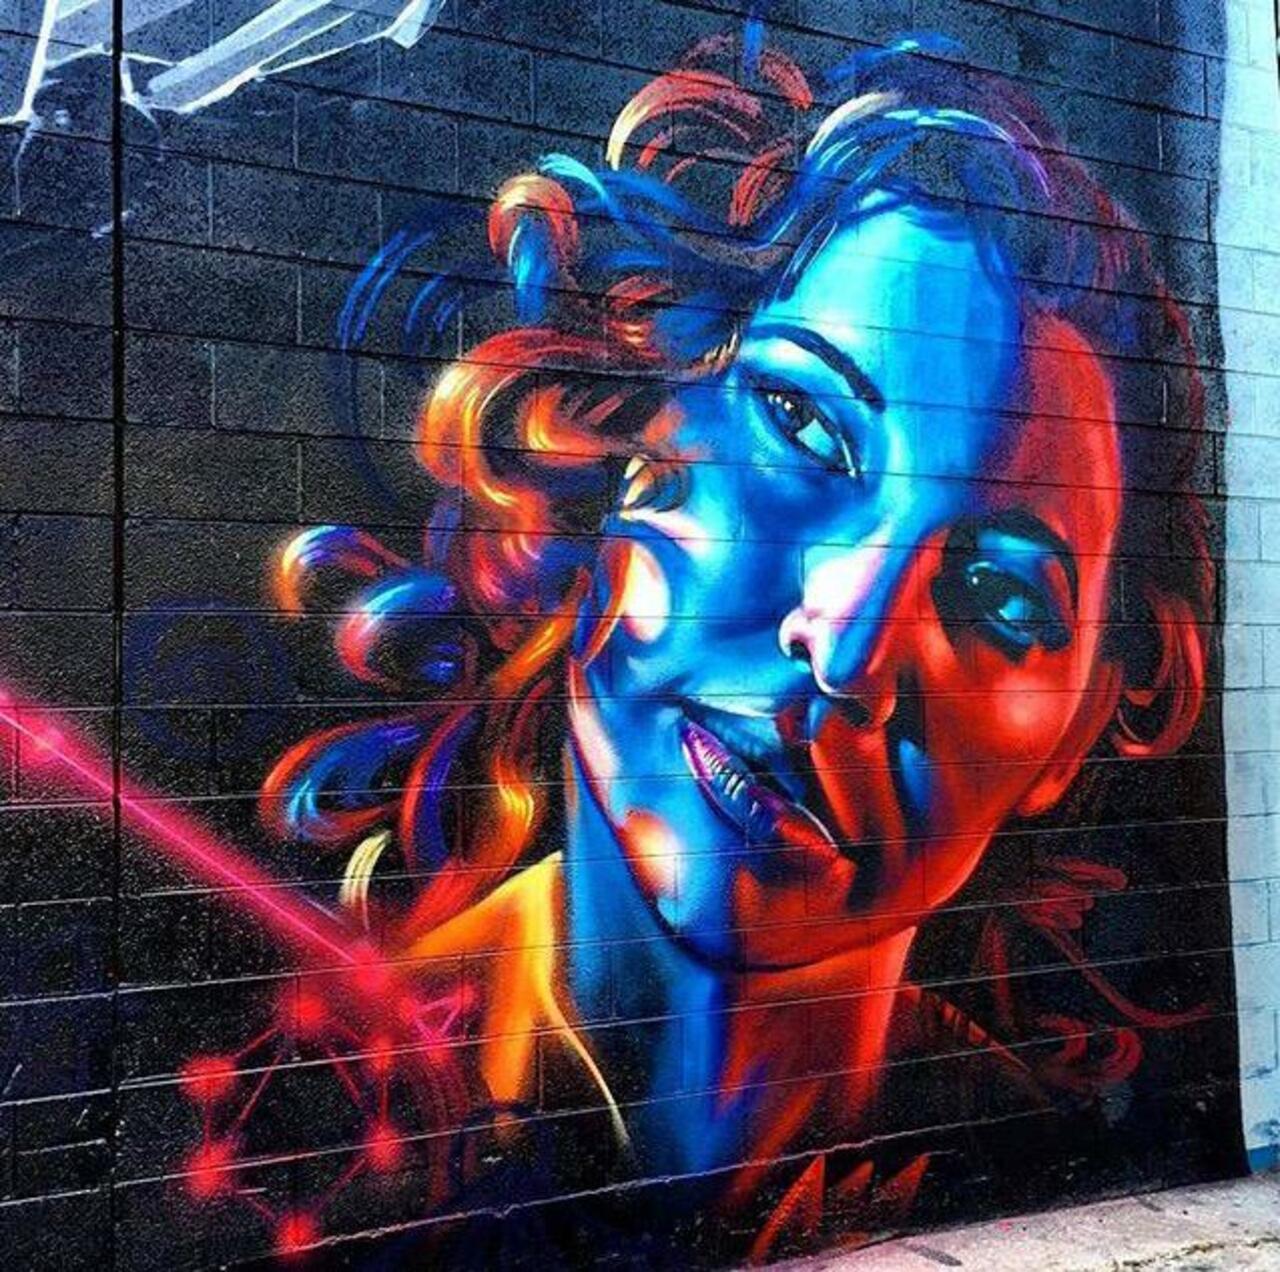 https://goo.gl/7kifqw RT GoogleStreetArt: Street Art by dreadicrgod 

#art #graffiti #mural #streetart http://t.co/zKd293KKjr